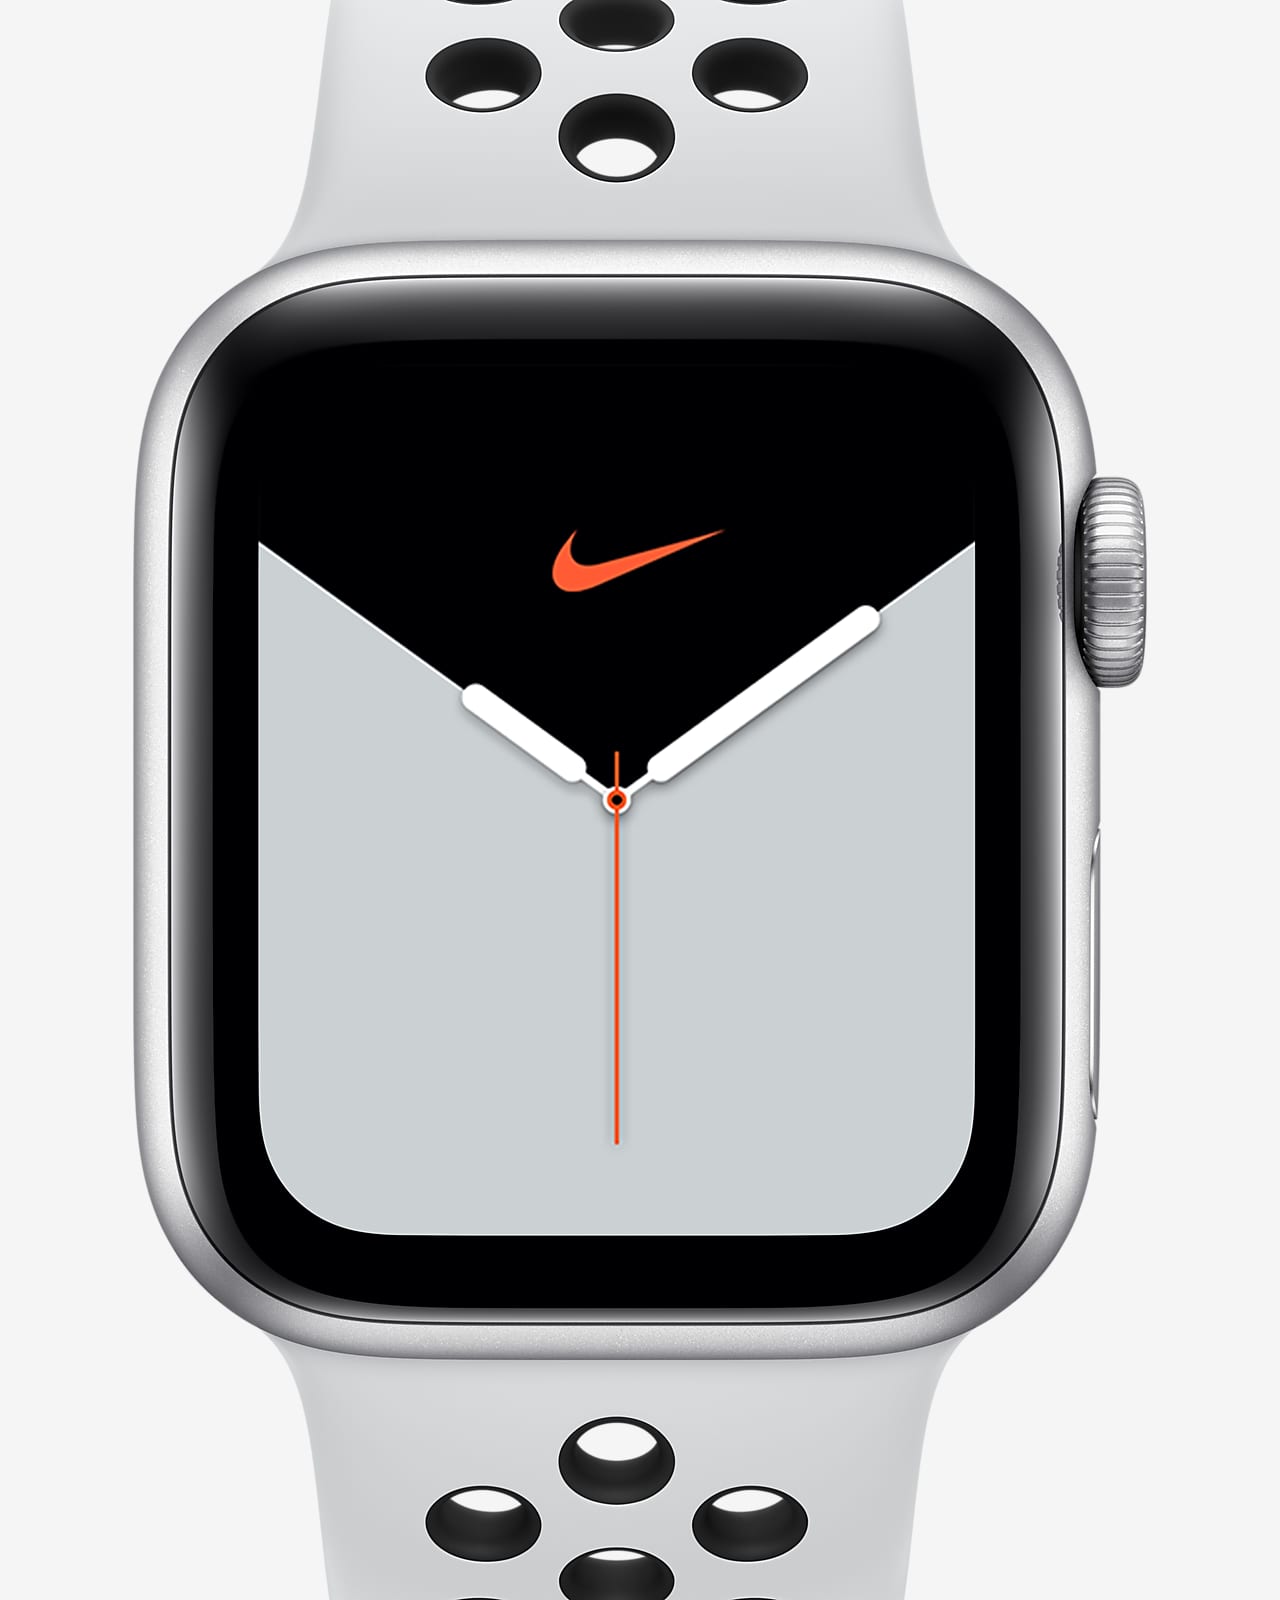 Apple Watch Nike Series 5 (GPS) Open Box z paskiem sportowym Nike i kopertą 40 mm z aluminium w kolorze srebrnym